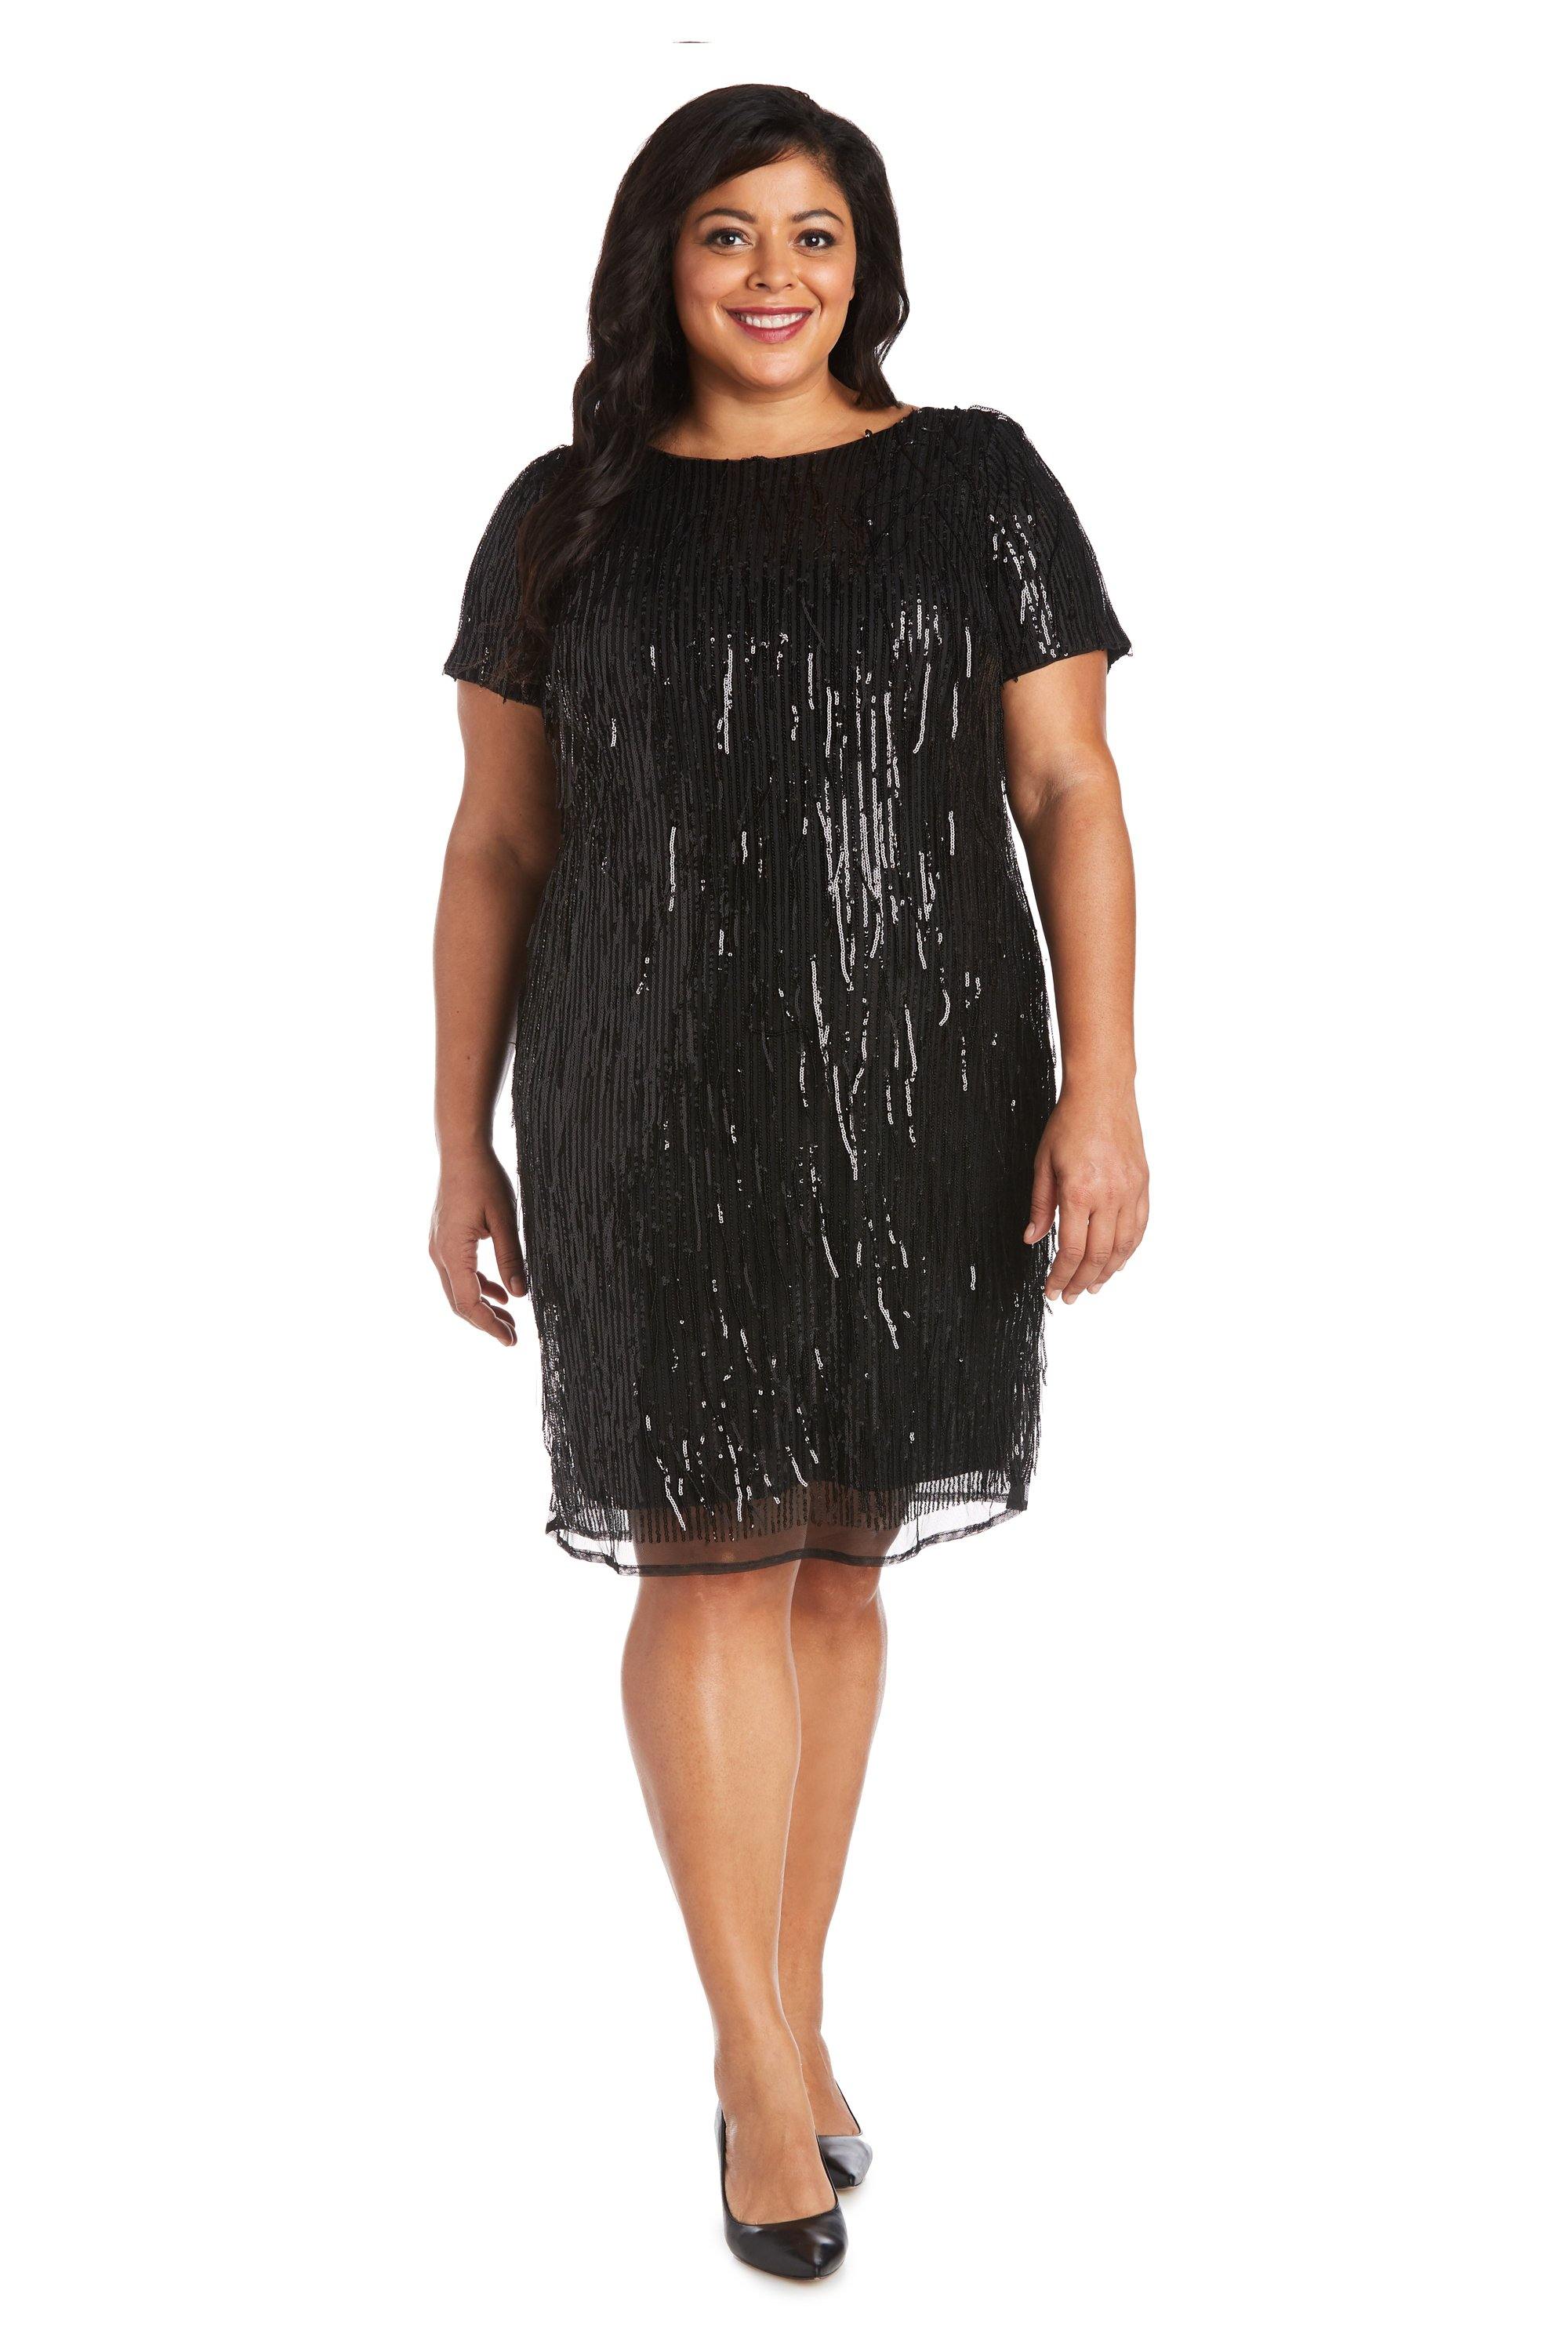 R&M Richards Short Plus Size Sequins Dress 7071W - The Dress Outlet